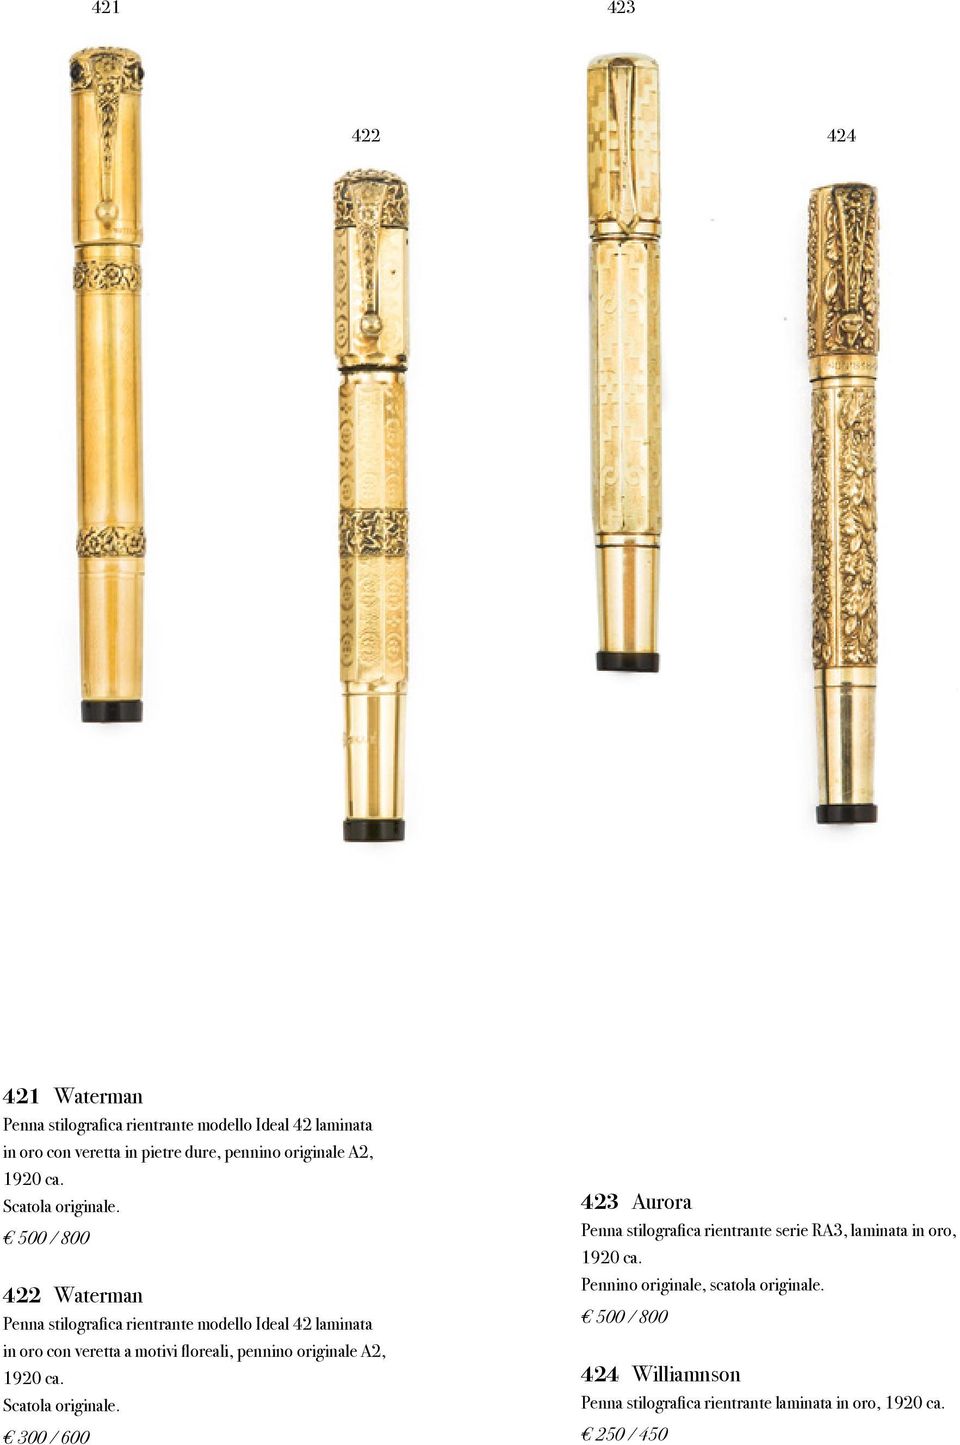 500 / 800 422 Waterman Penna stilografica rientrante modello Ideal 42 laminata in oro con veretta a motivi floreali, pennino originale 